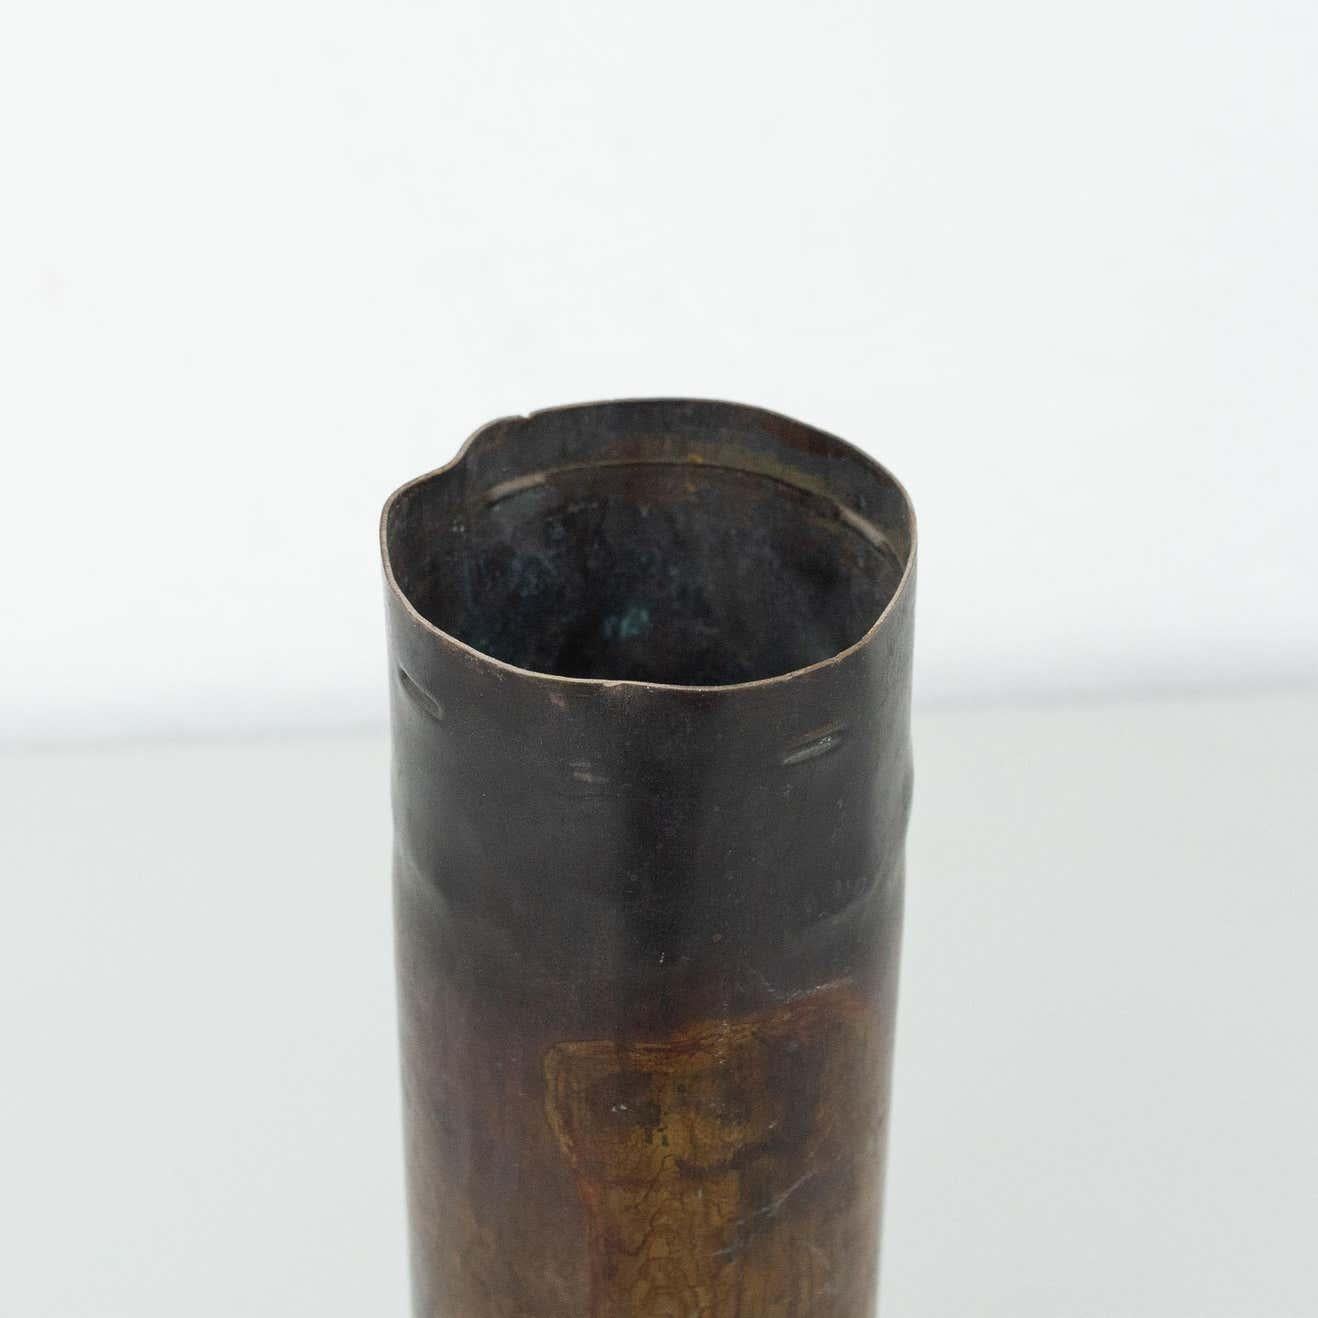 Satz von drei Vasen aus Bronze.
Von einem unbekannten Hersteller aus Spanien, um 1930.
Vorherige Verwendung waren Kugeln.

Originaler Zustand mit geringen alters- und gebrauchsbedingten Abnutzungserscheinungen, der eine schöne Patina